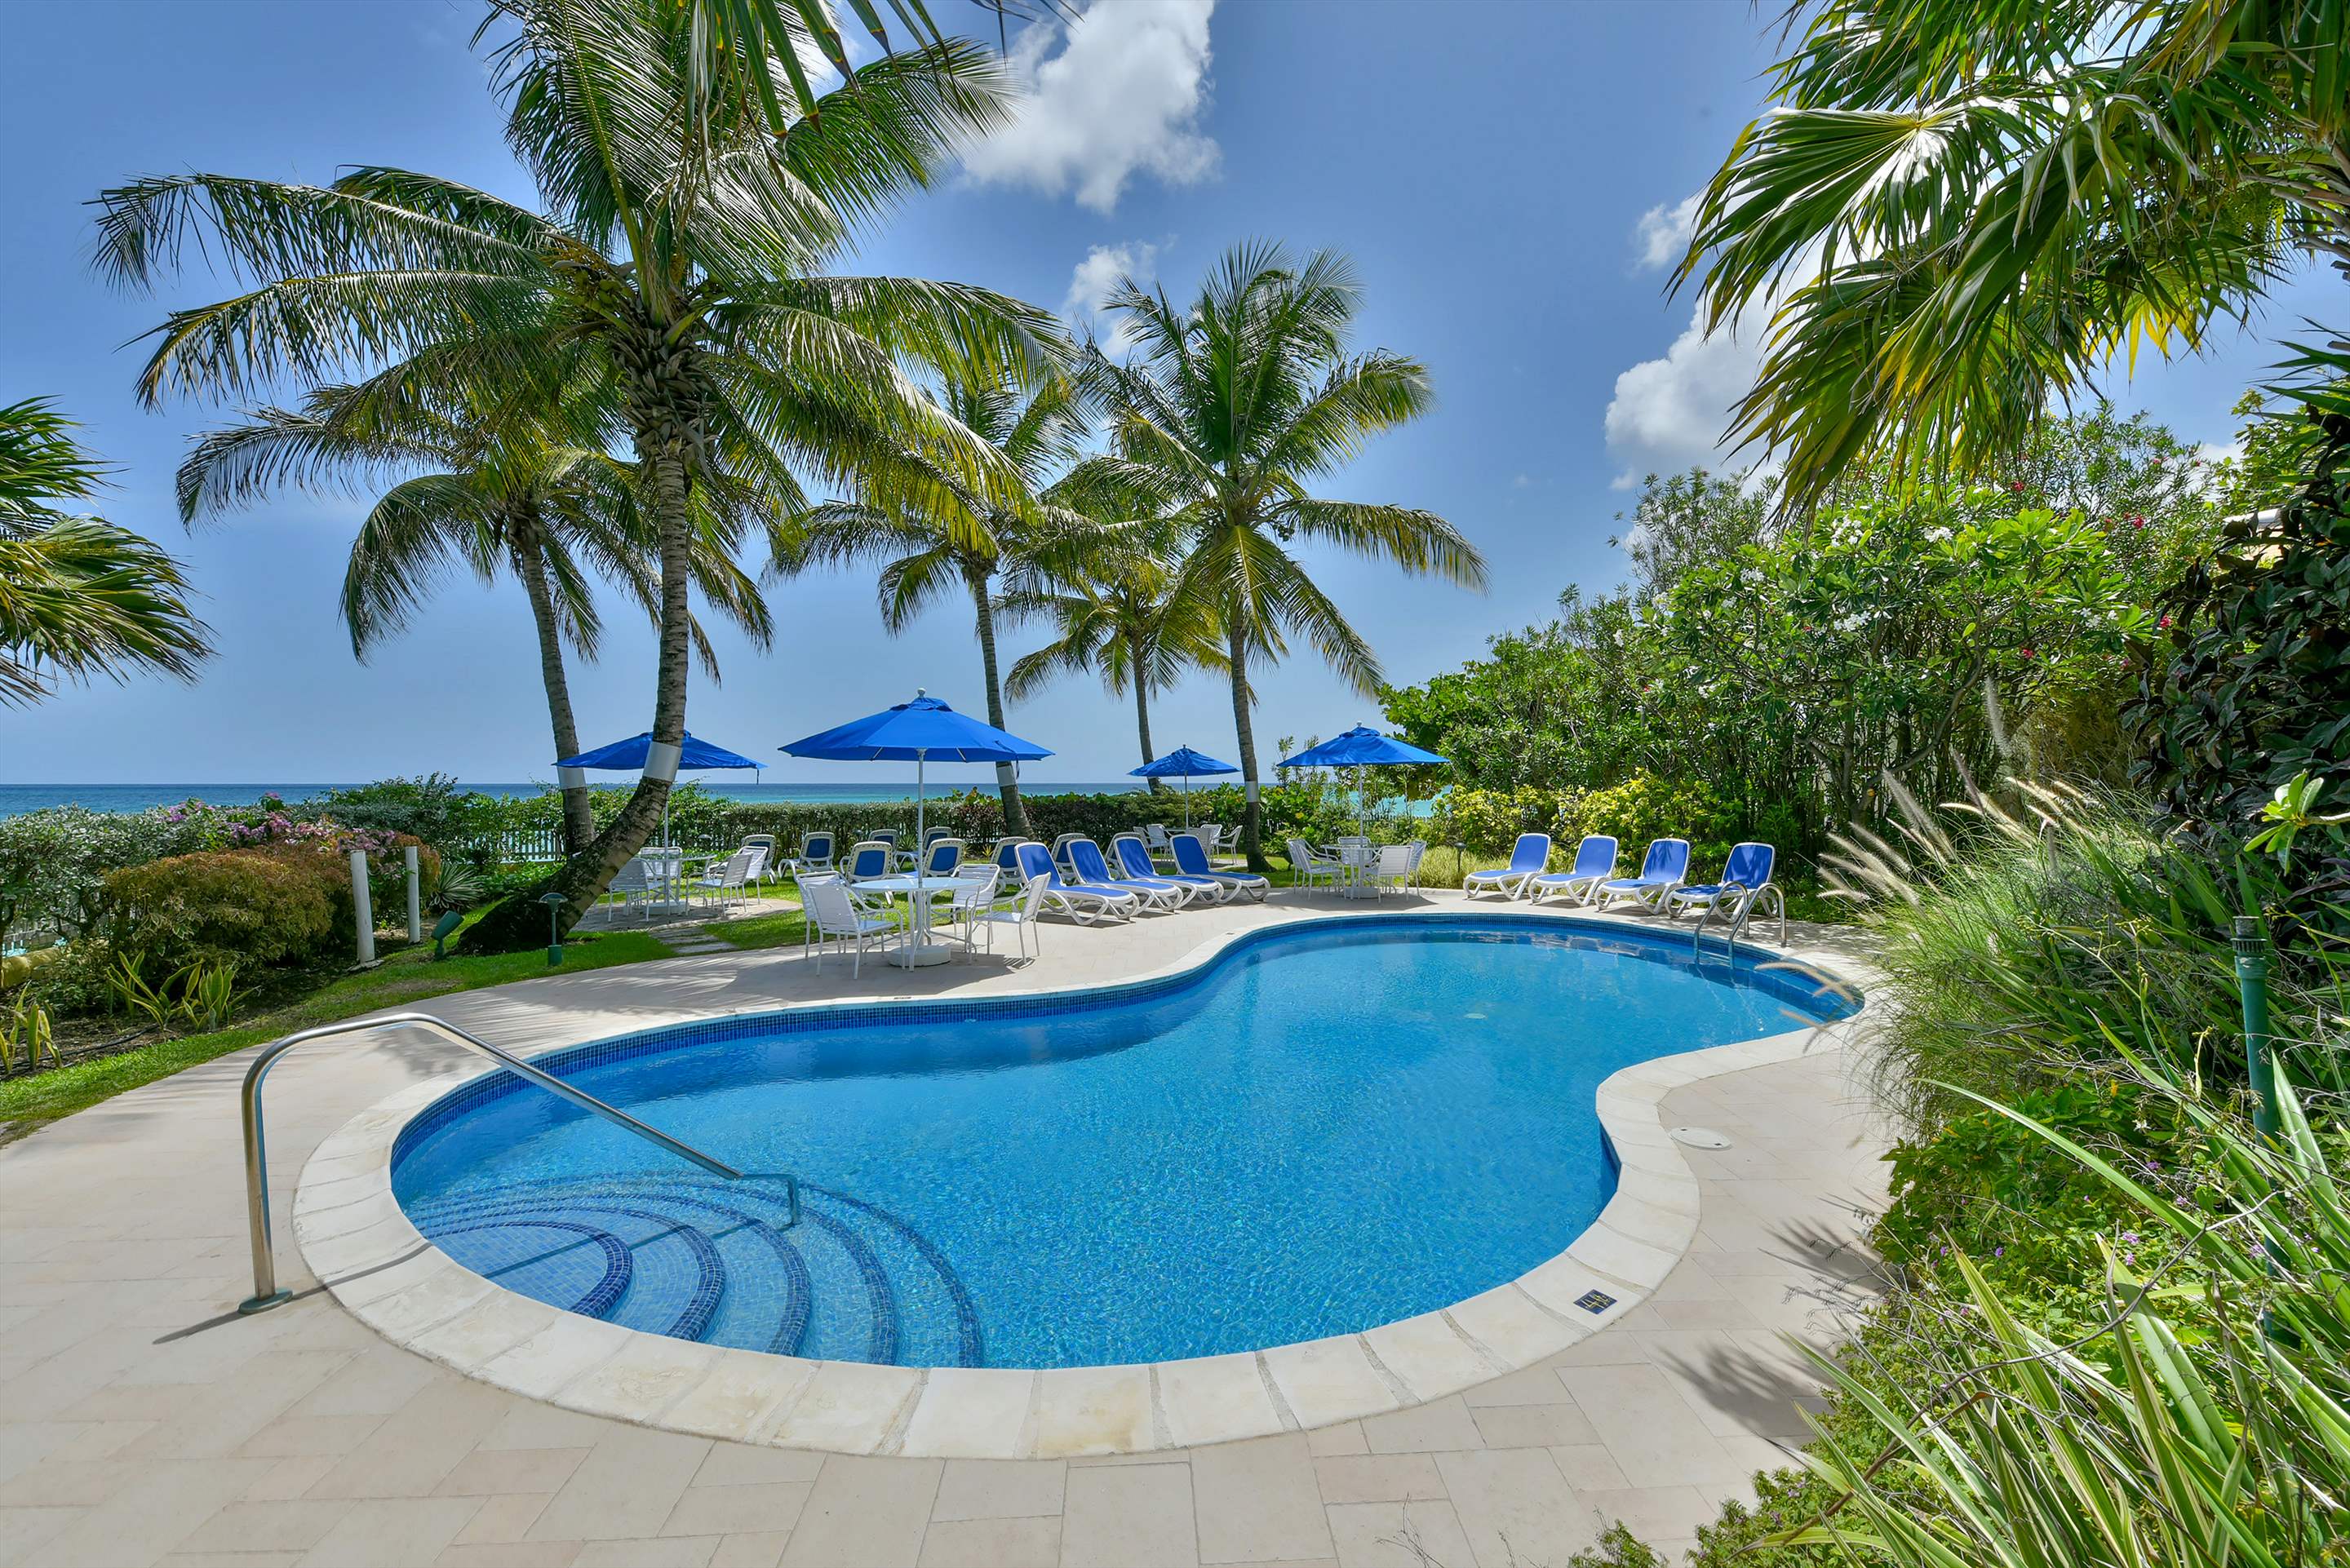 Maxwell Beach Villas 503, 2 bedroom, 2 bedroom villa in St. Lawrence Gap & South Coast, Barbados Photo #10